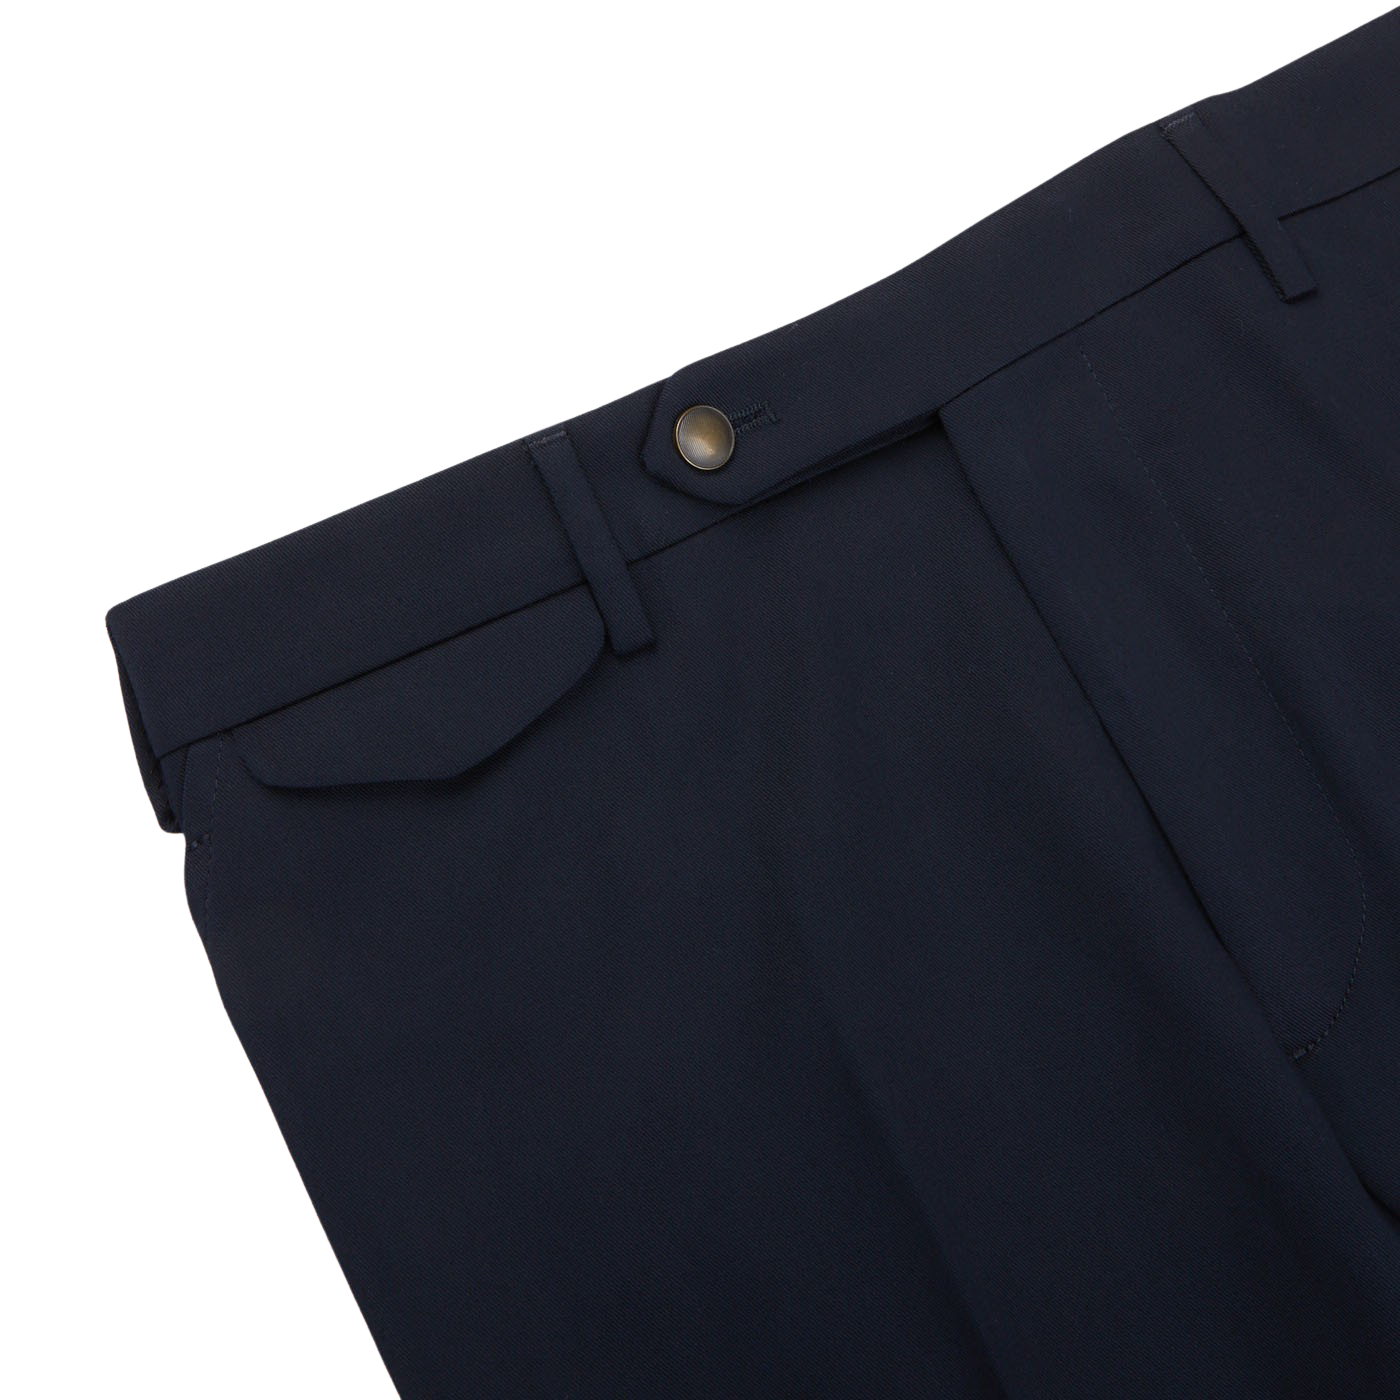 XFLWAM Women's Dark High Waist Cotton Trousers Jogger Sweatpants Loose  Casual Pants Teen Girls Dark Blue XL - Walmart.com